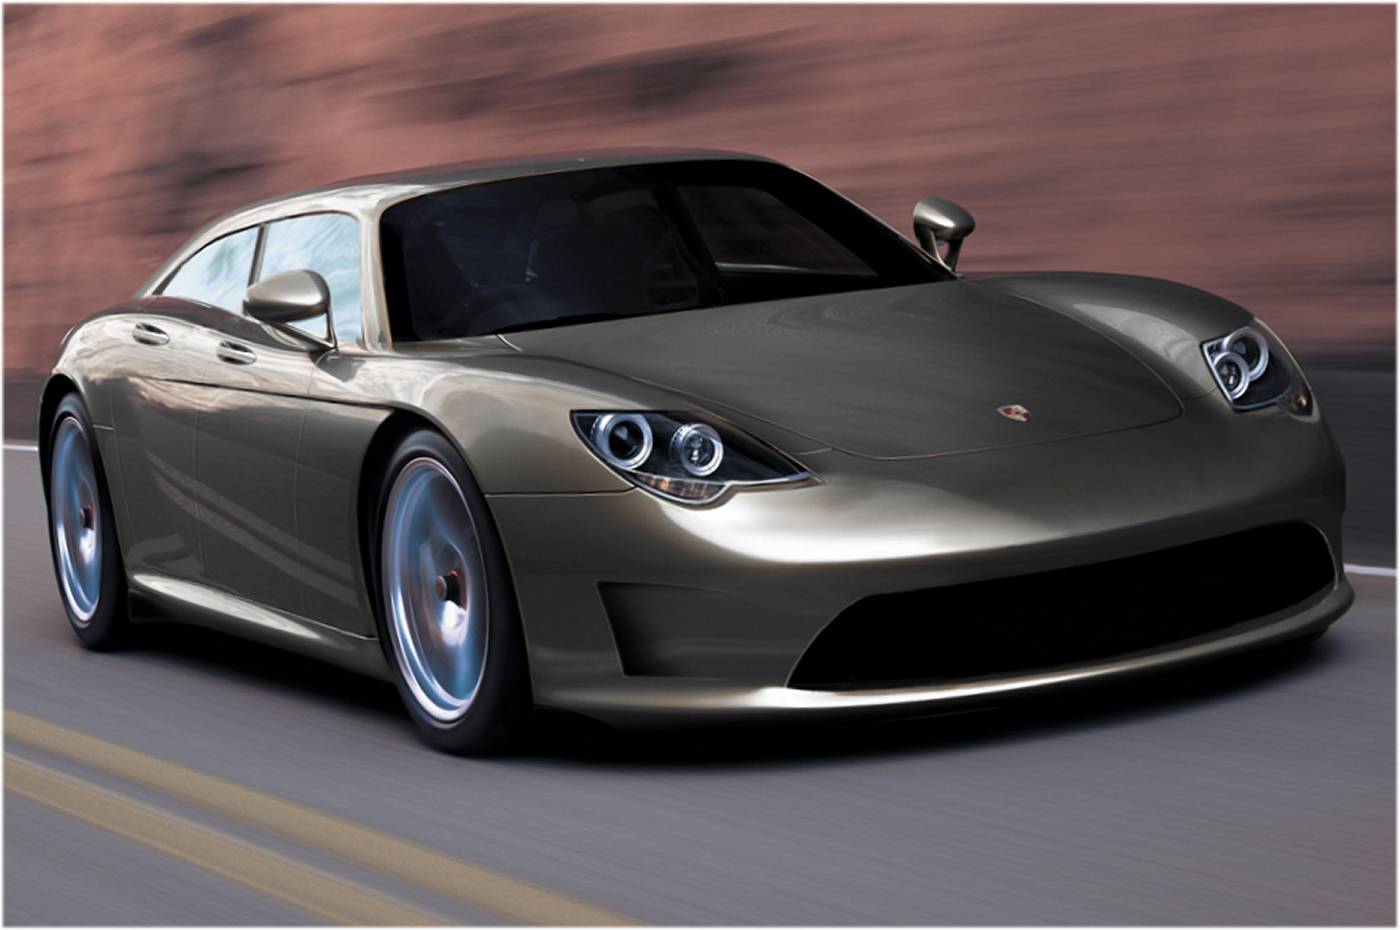 New Porsche Concept Car